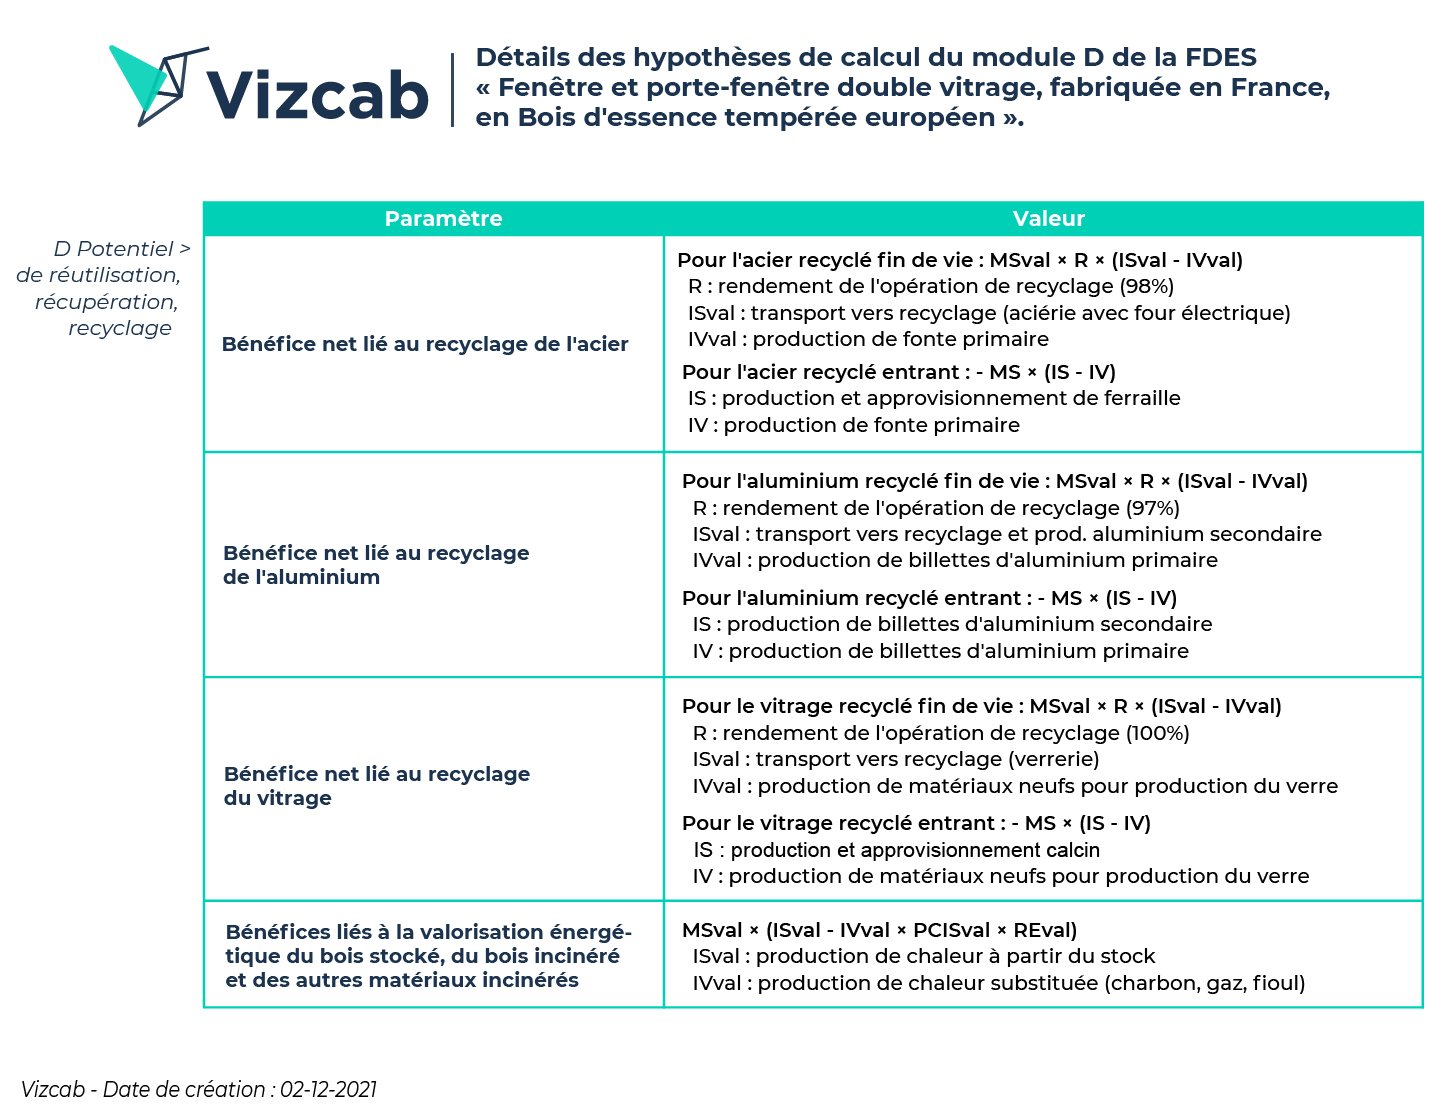 Vizcab - Détails des hypothèses de calcul du module D de la FDES